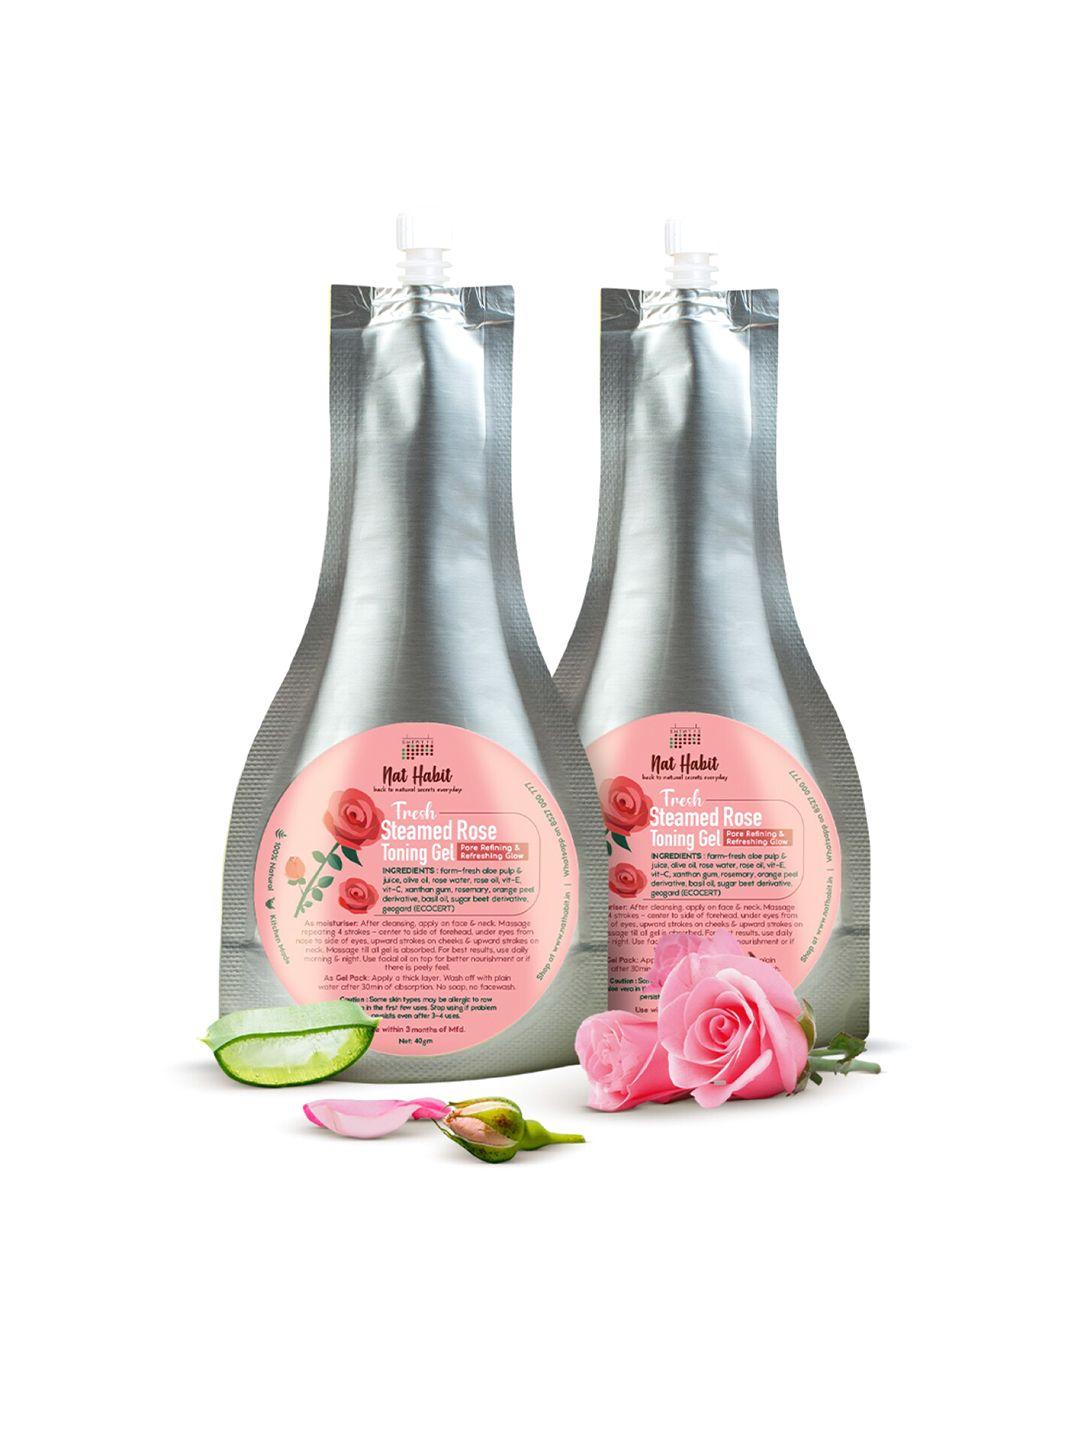 nat habit set of 2 fresh steamed rose toning face gel - 40 g each